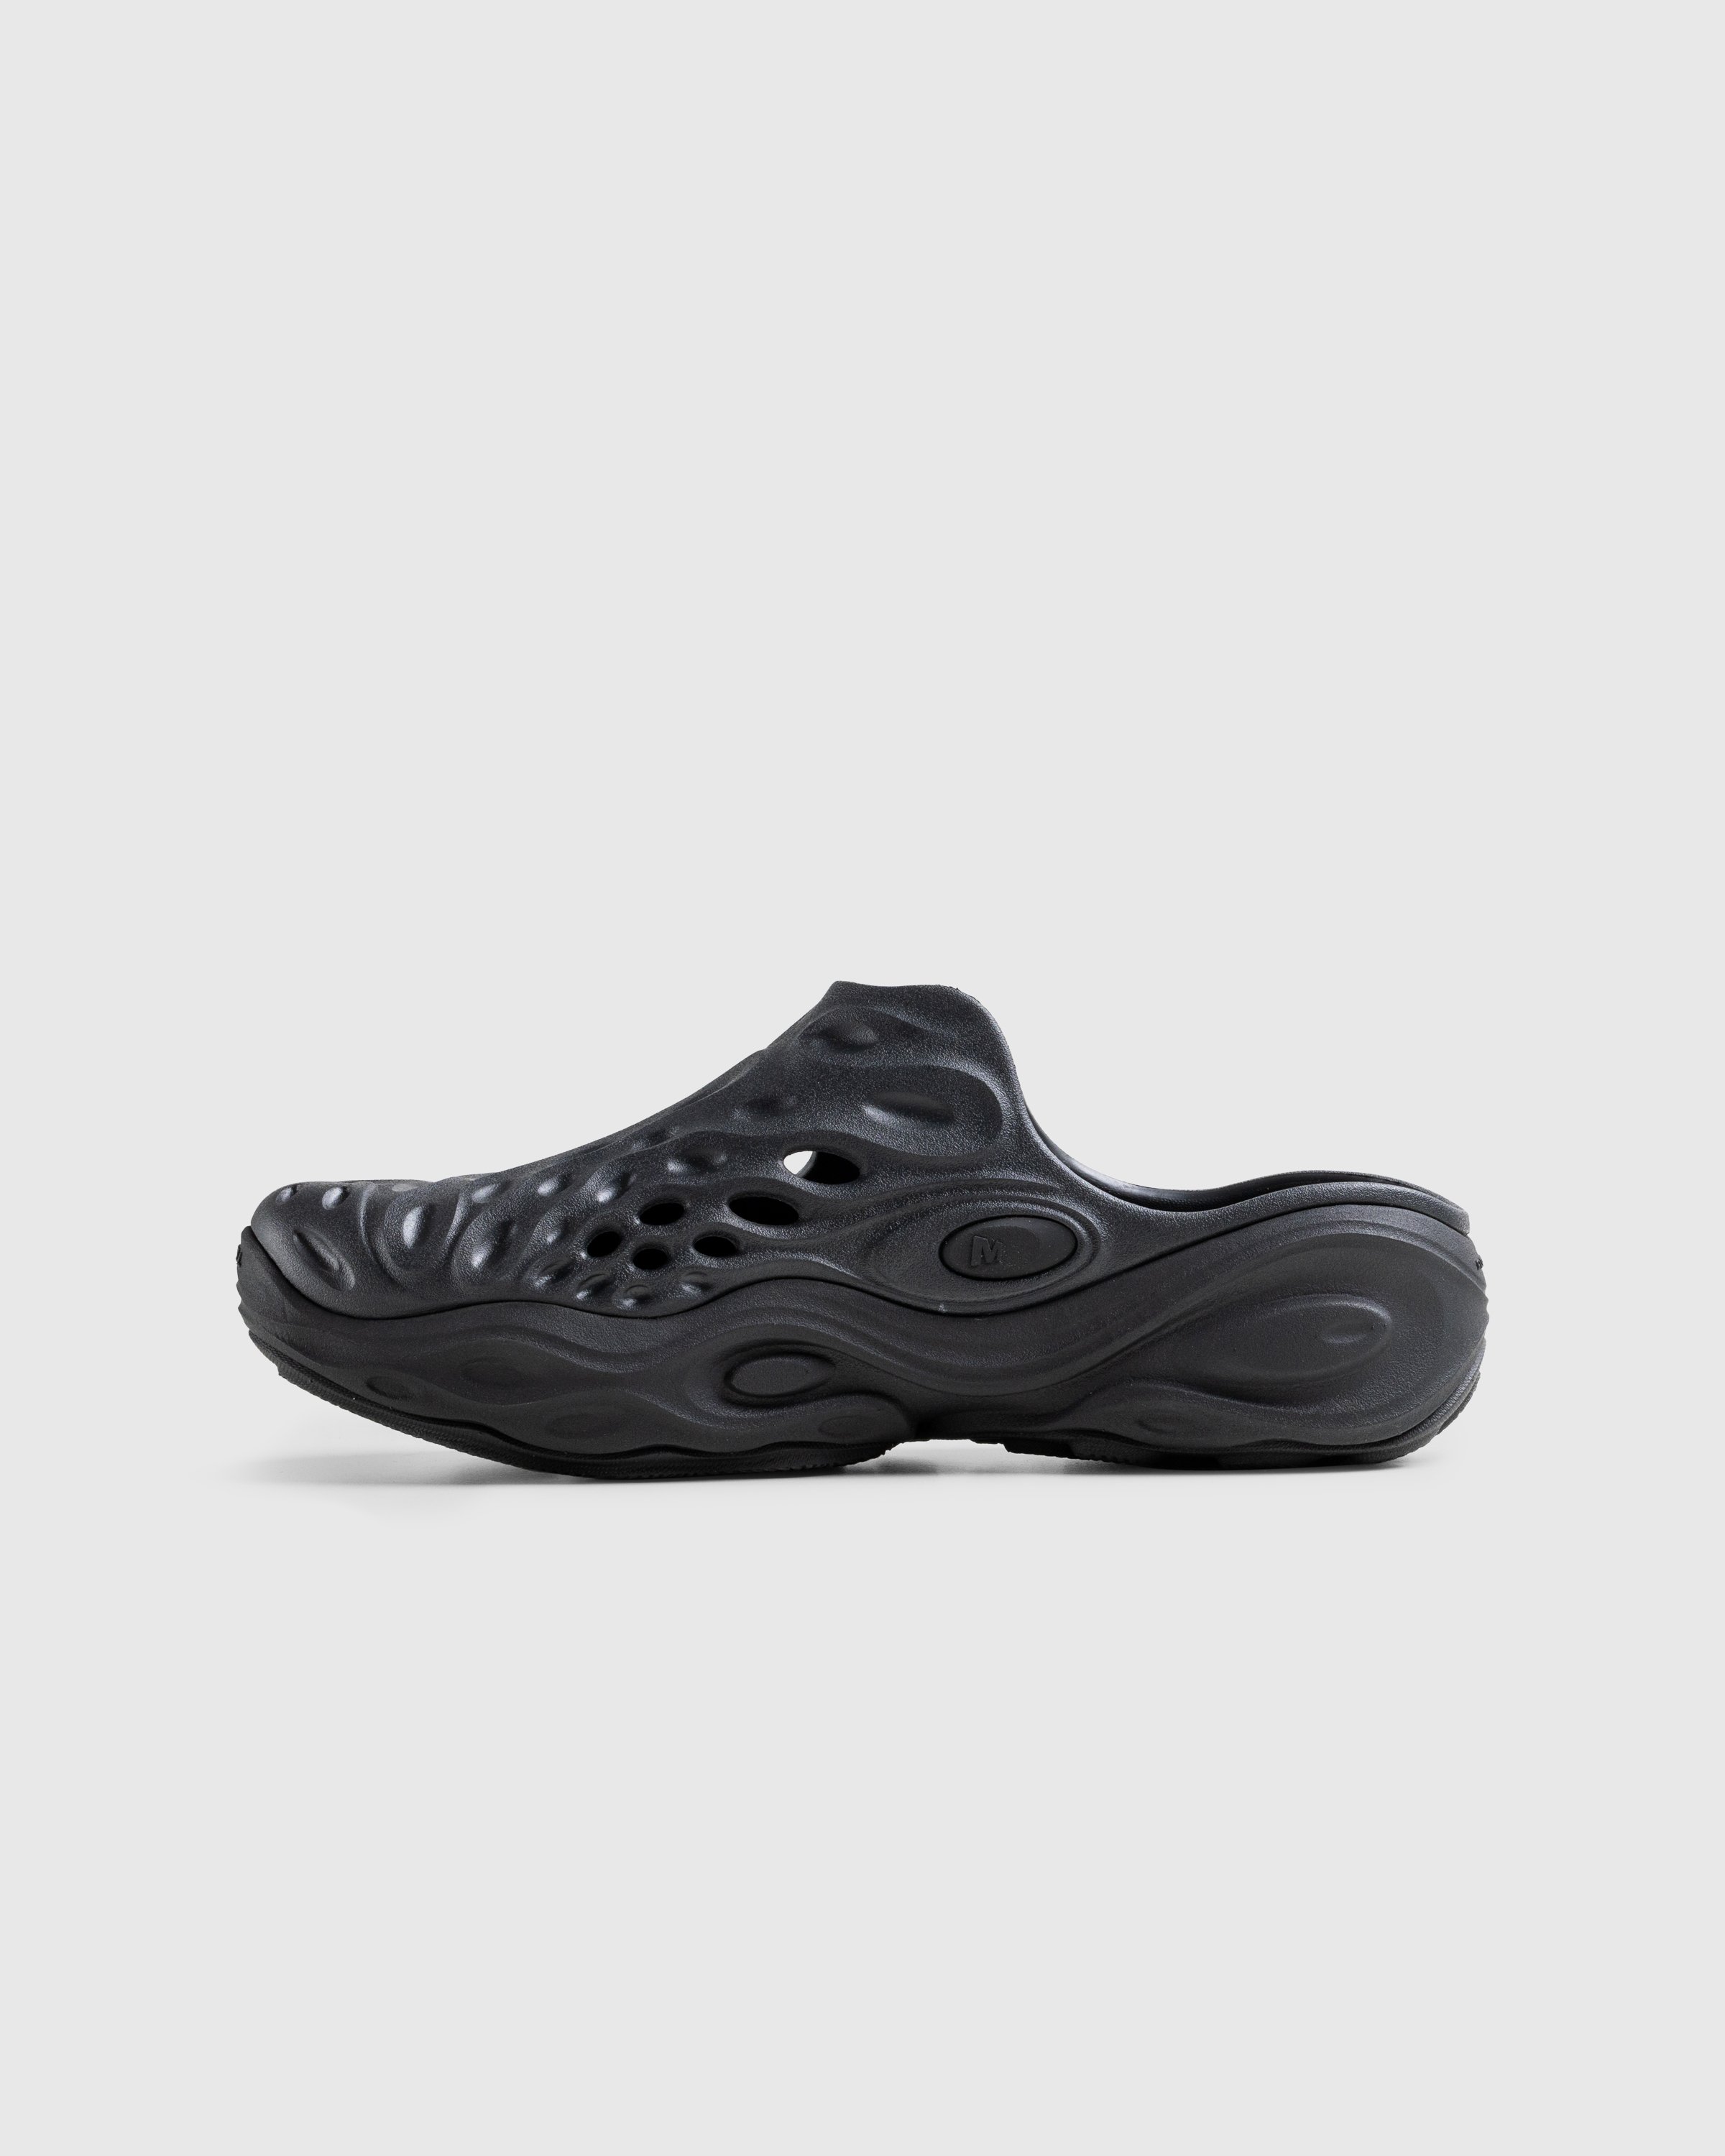 Merrell - HYDRO NEXT GEN MULE SE/TRIPLE BLACK - Footwear - Black - Image 2